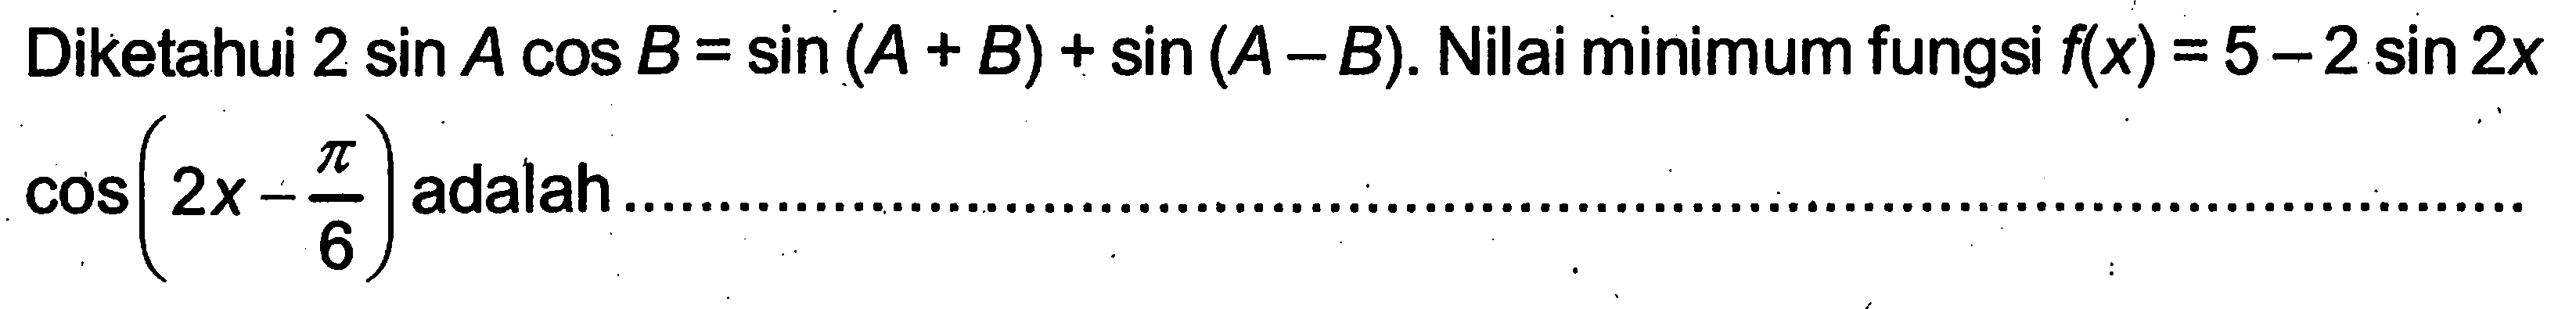 Diketahui  2 sin A cos B=sin (A+B)+sin (A-B) . Nilai minimum fungsi  f(x)=5-2 sin 2x   cos (2x-pi/6)  adalah.